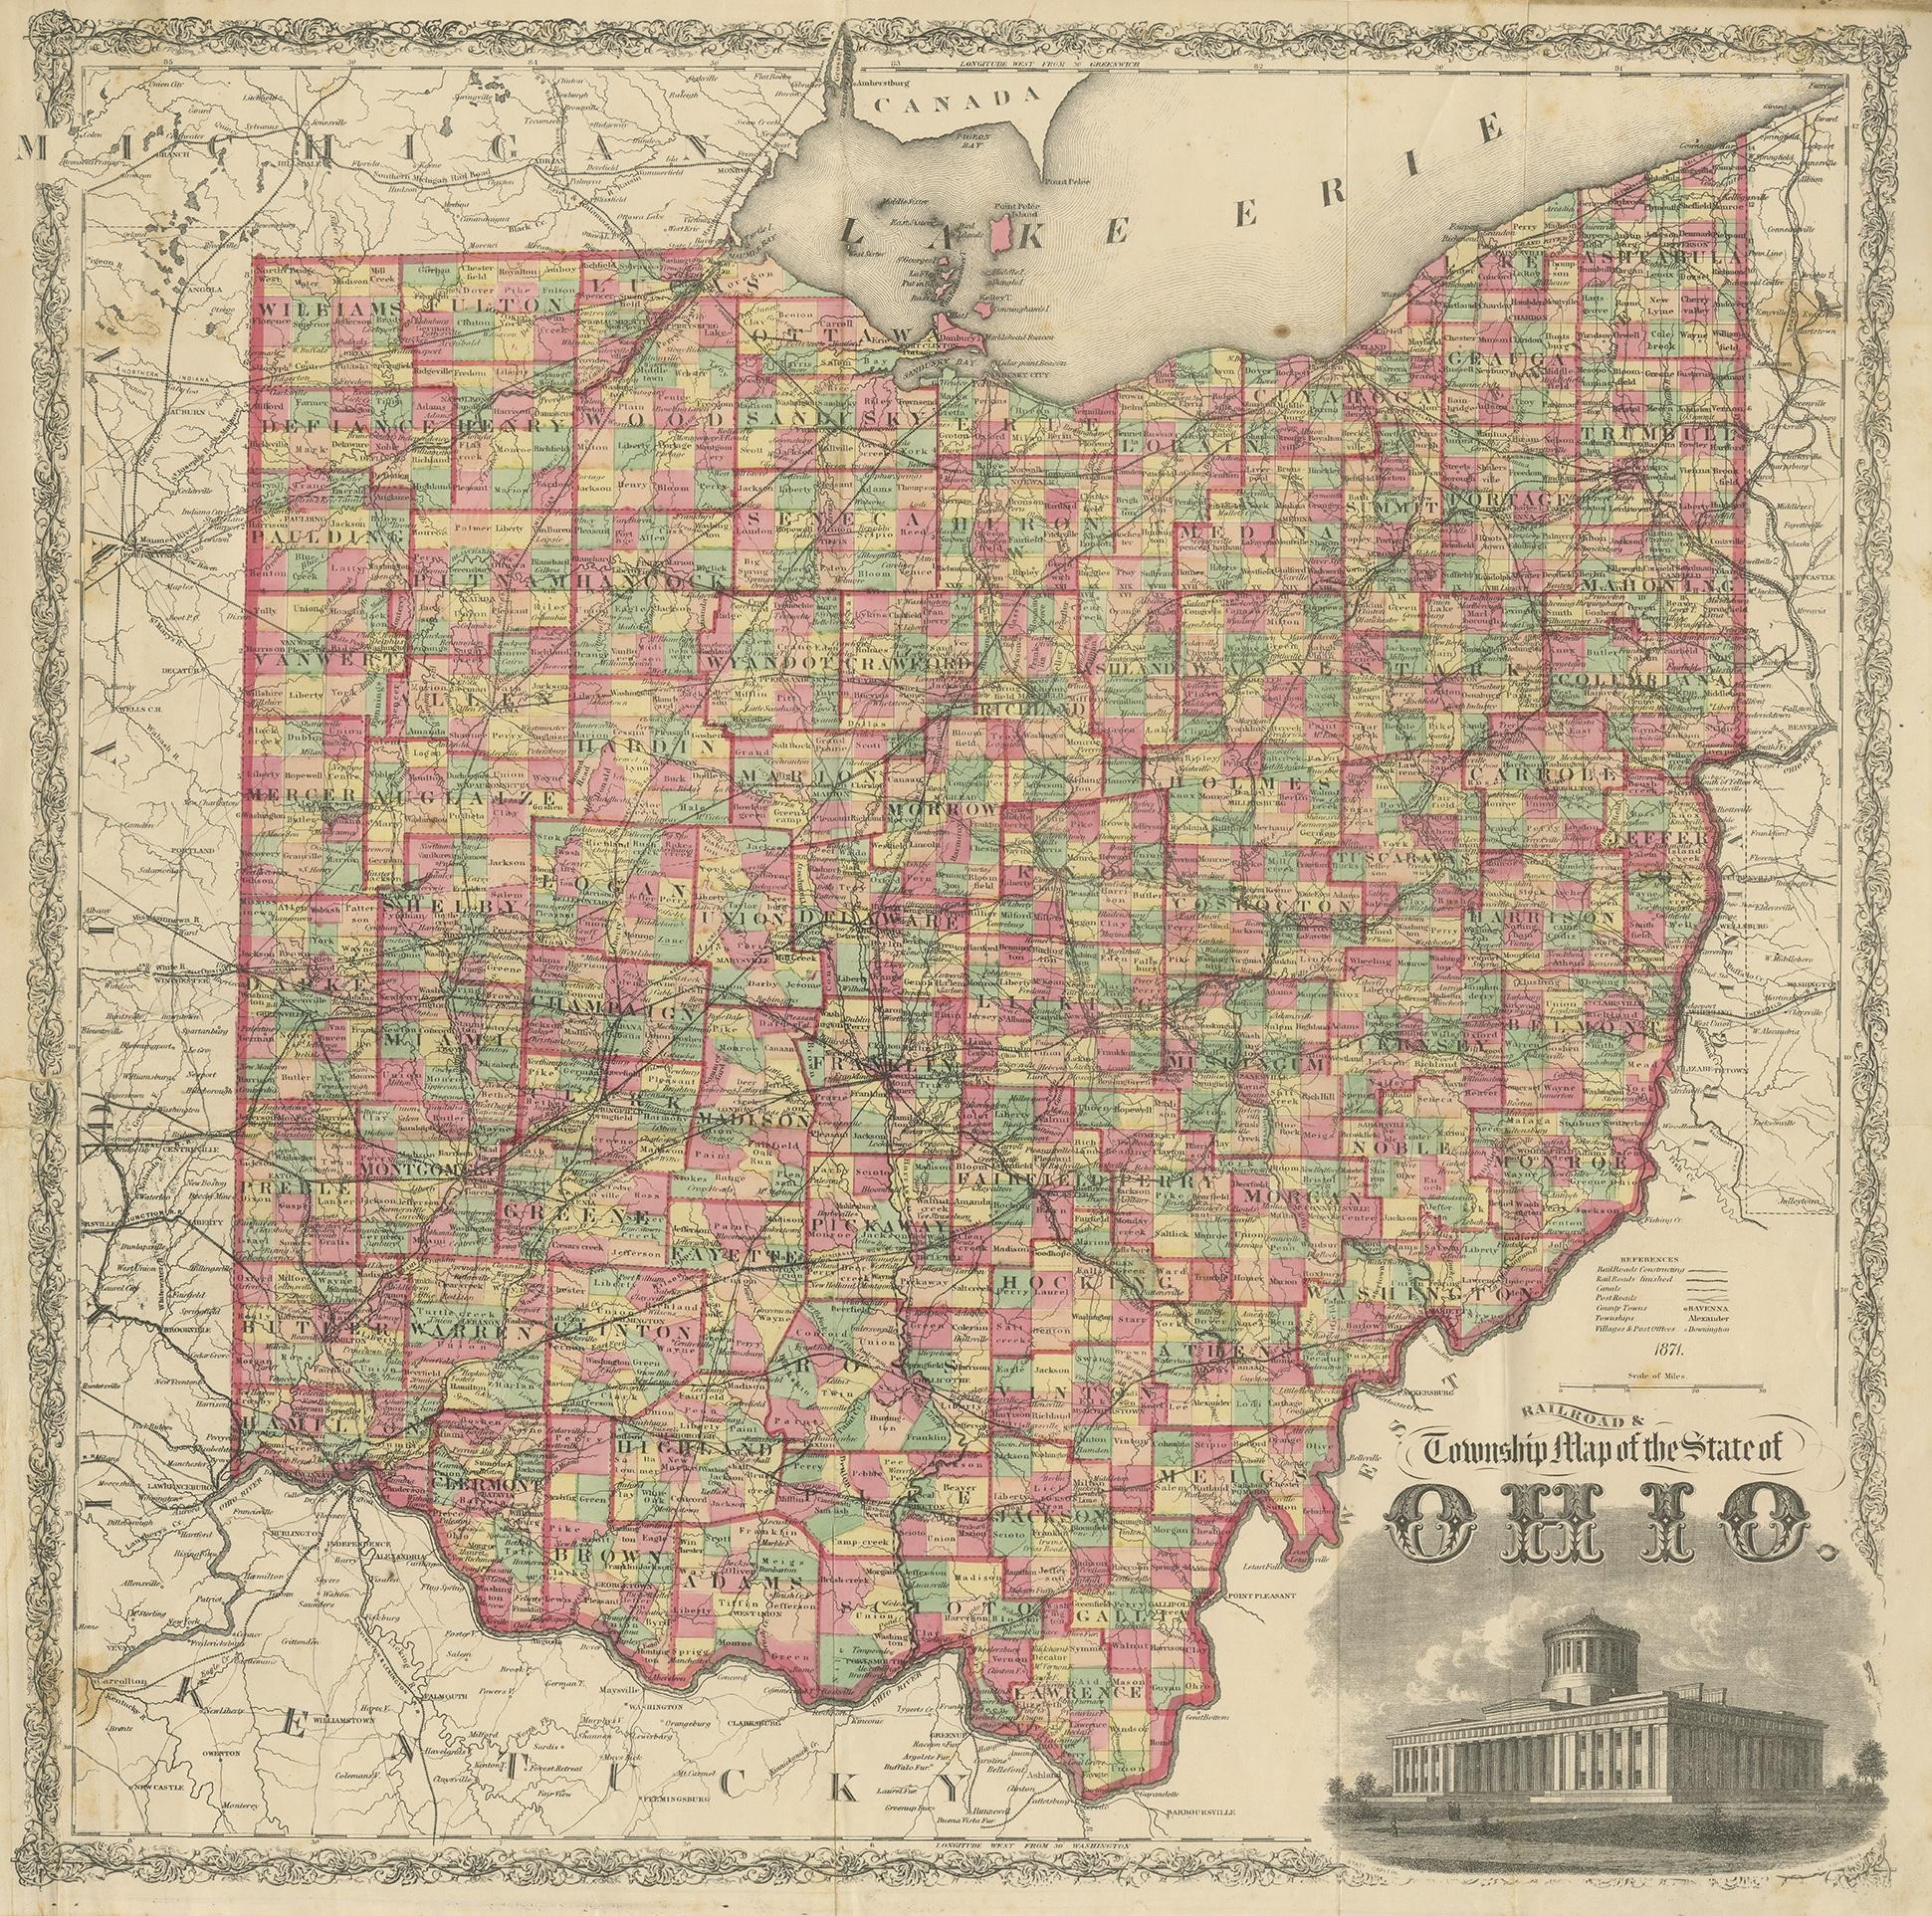 Antike Karte mit dem Titel 'Railroad & Township Map of the State of Ohio'. Original antike Karte des Staates Ohio. Diese Karte stammt aus dem 'Atlas of Preble County Ohio' von C.O. Titus. Veröffentlicht 1871.